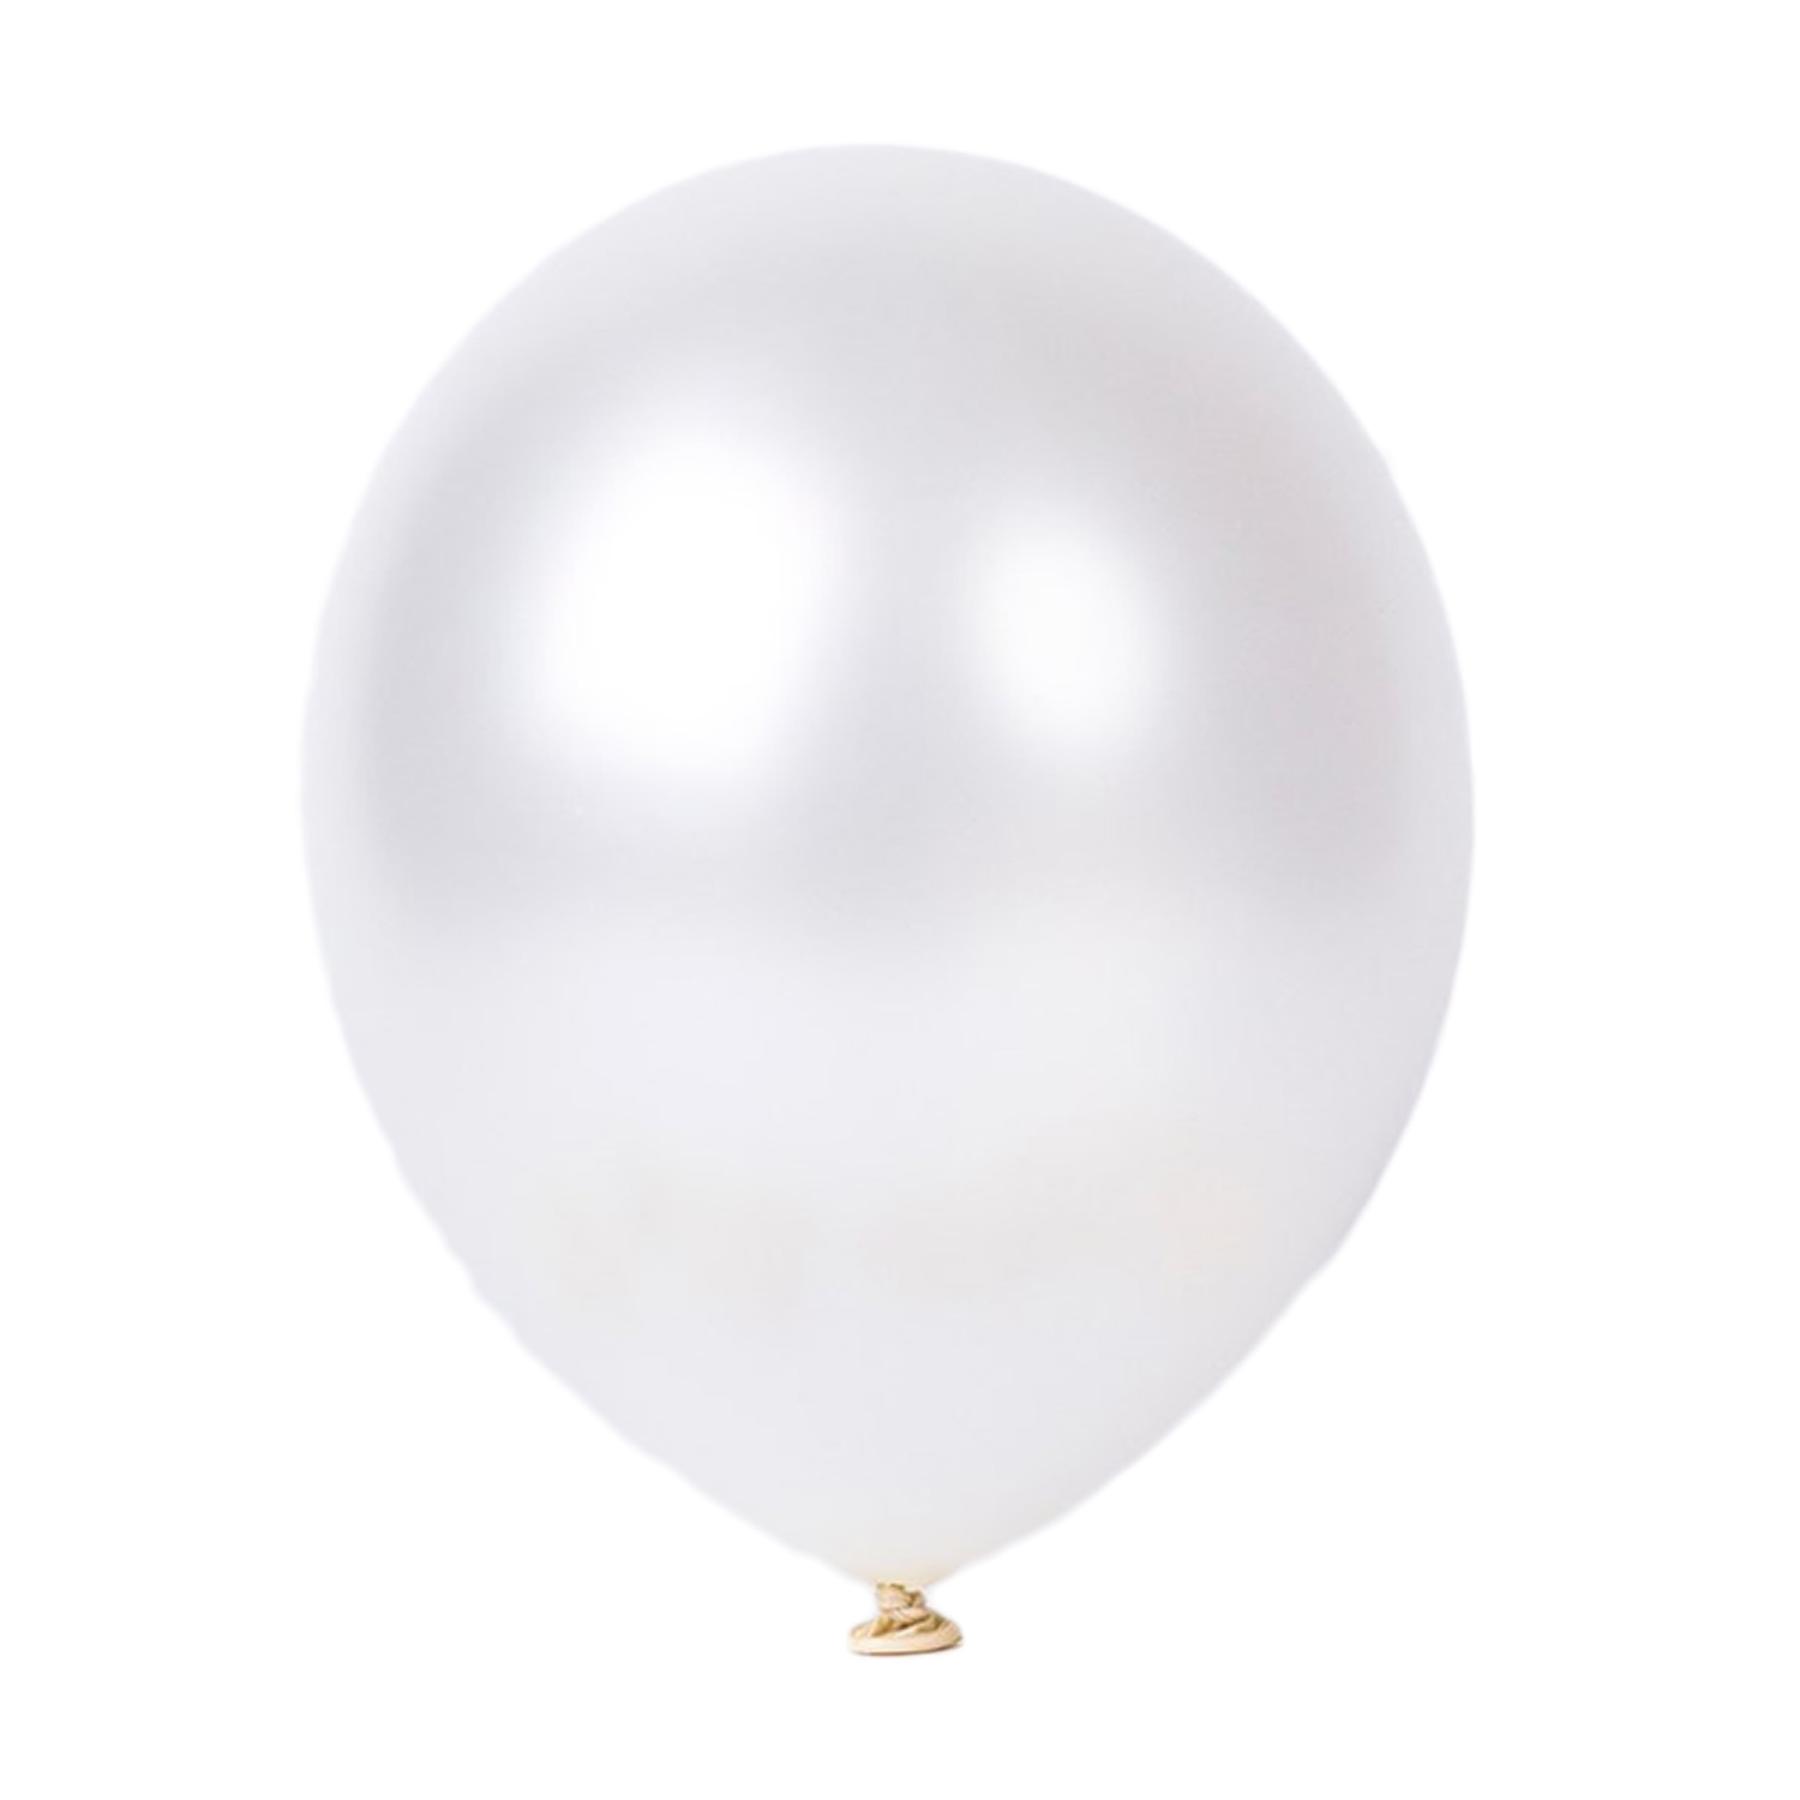 10er SET - Latex Luftballon - 12inch - Weiß - Metallic (glänzend)